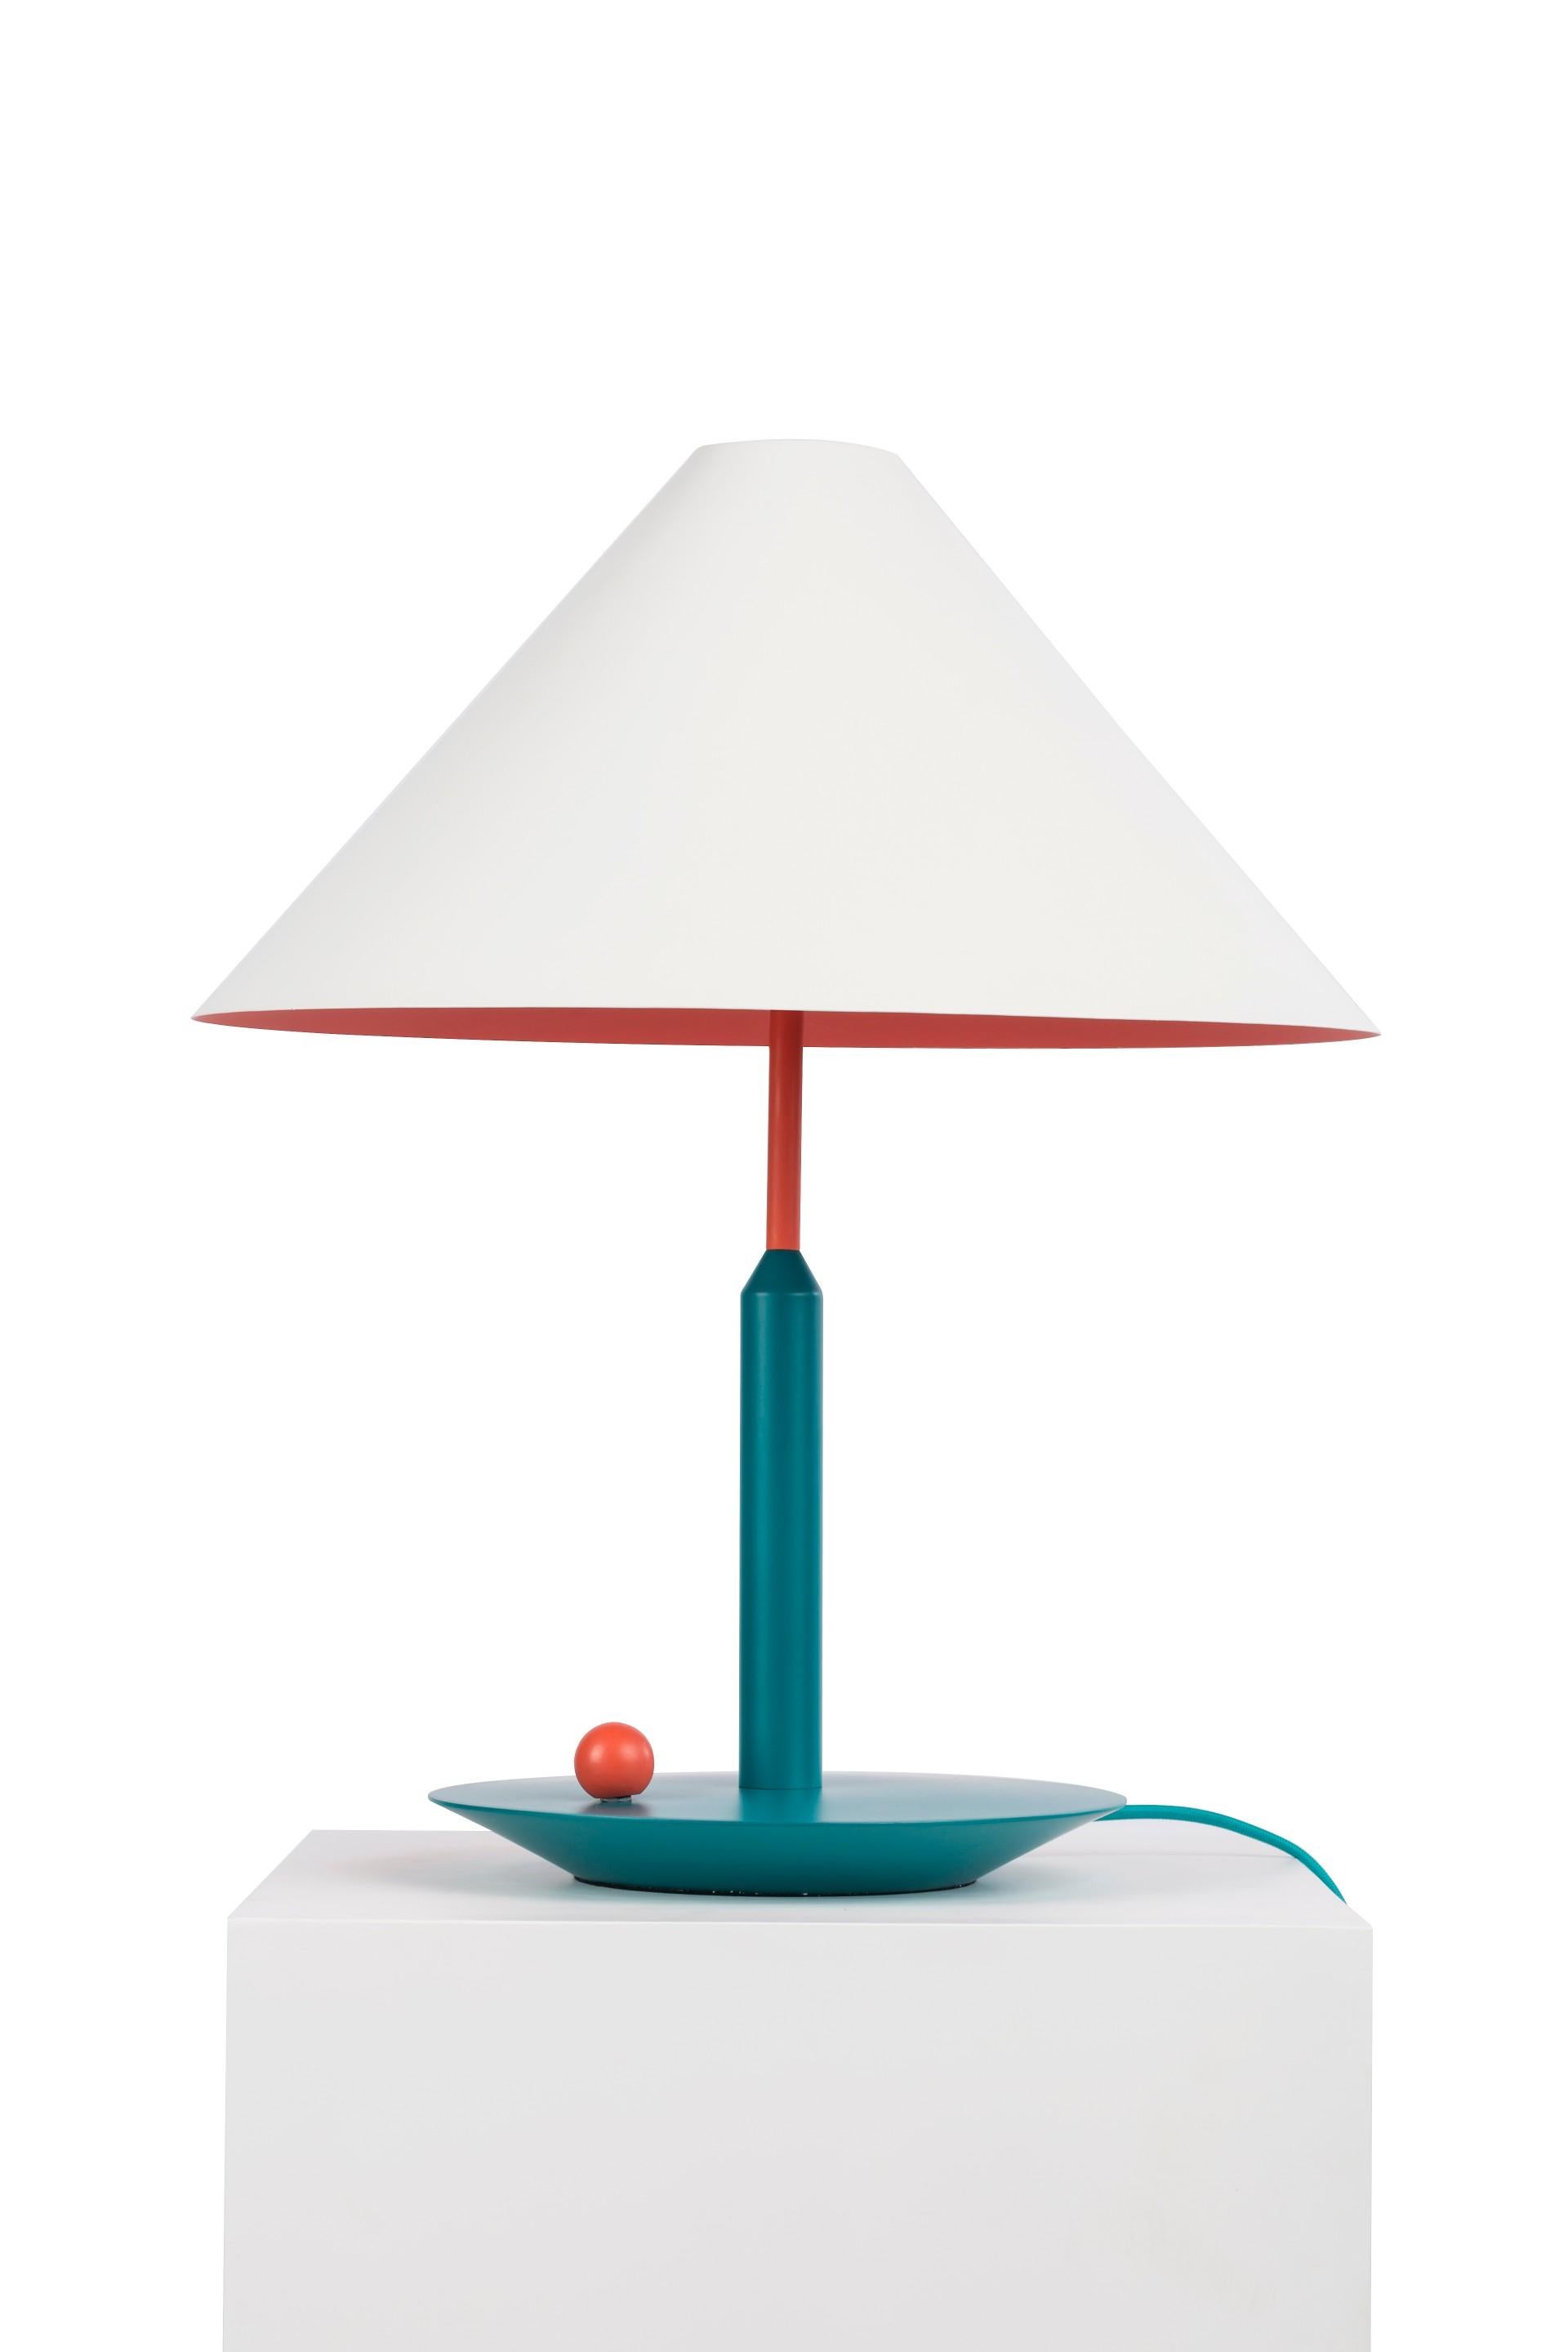 Lampe de table colorée de Thomas Dariel, Maison DADA
Mesures : Diamètre 45 x hauteur 55 cm
Tricolore
Abat-jour en métal peint par poudrage en blanc mat
Tons complémentaires vibrants à l'intérieur de l'abat-jour et sur le socle
Câble de